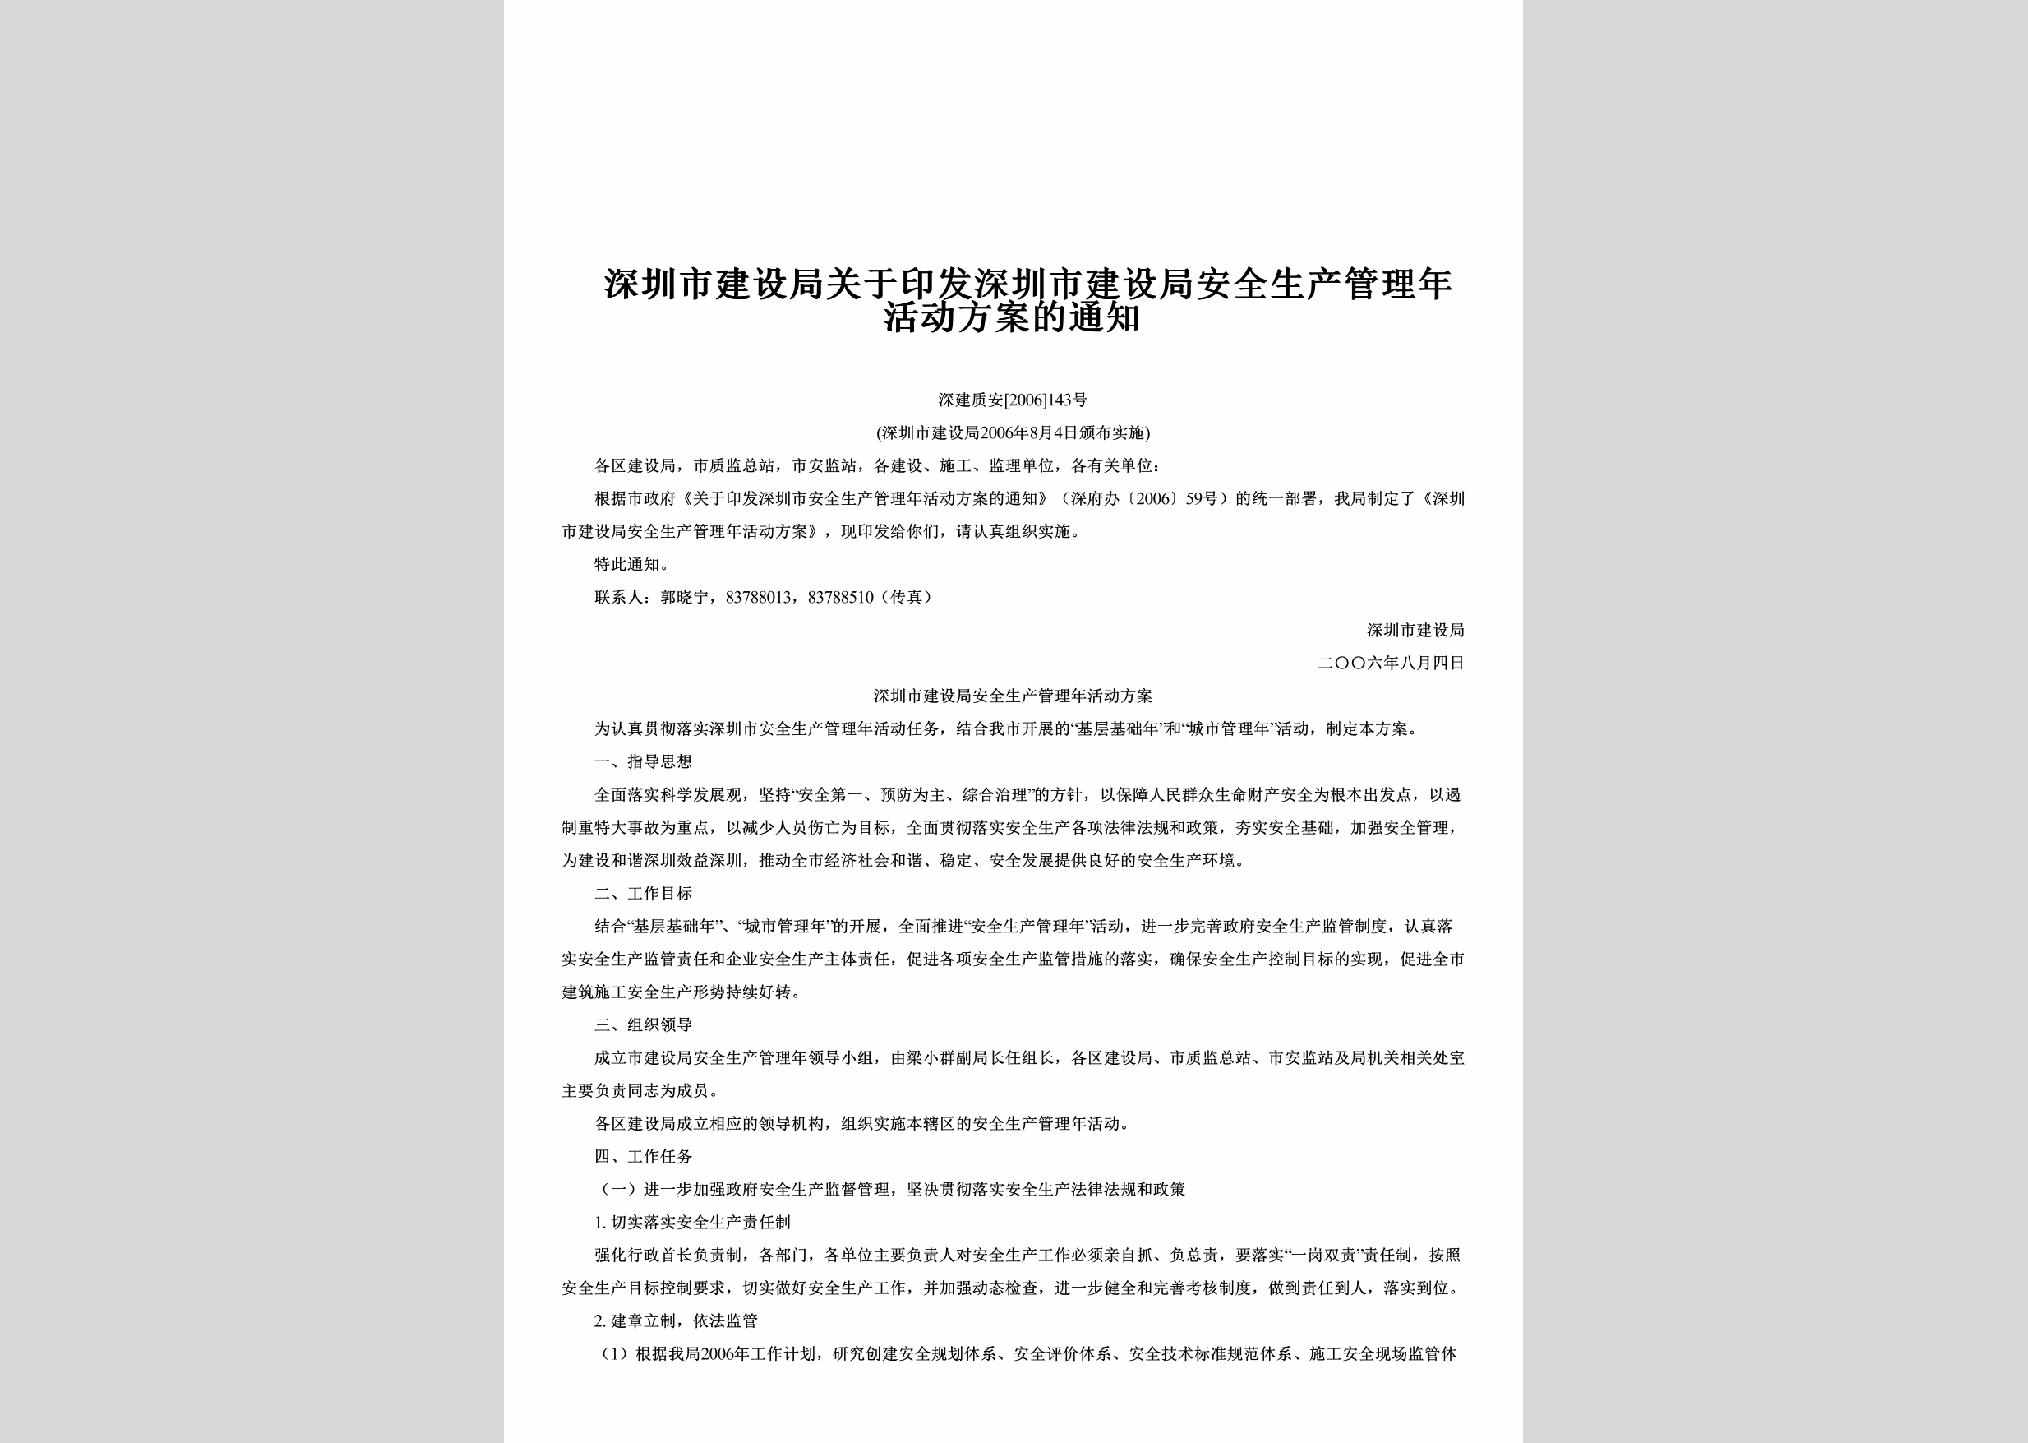 深建质安[2006]143号：关于印发深圳市建设局安全生产管理年活动方案的通知